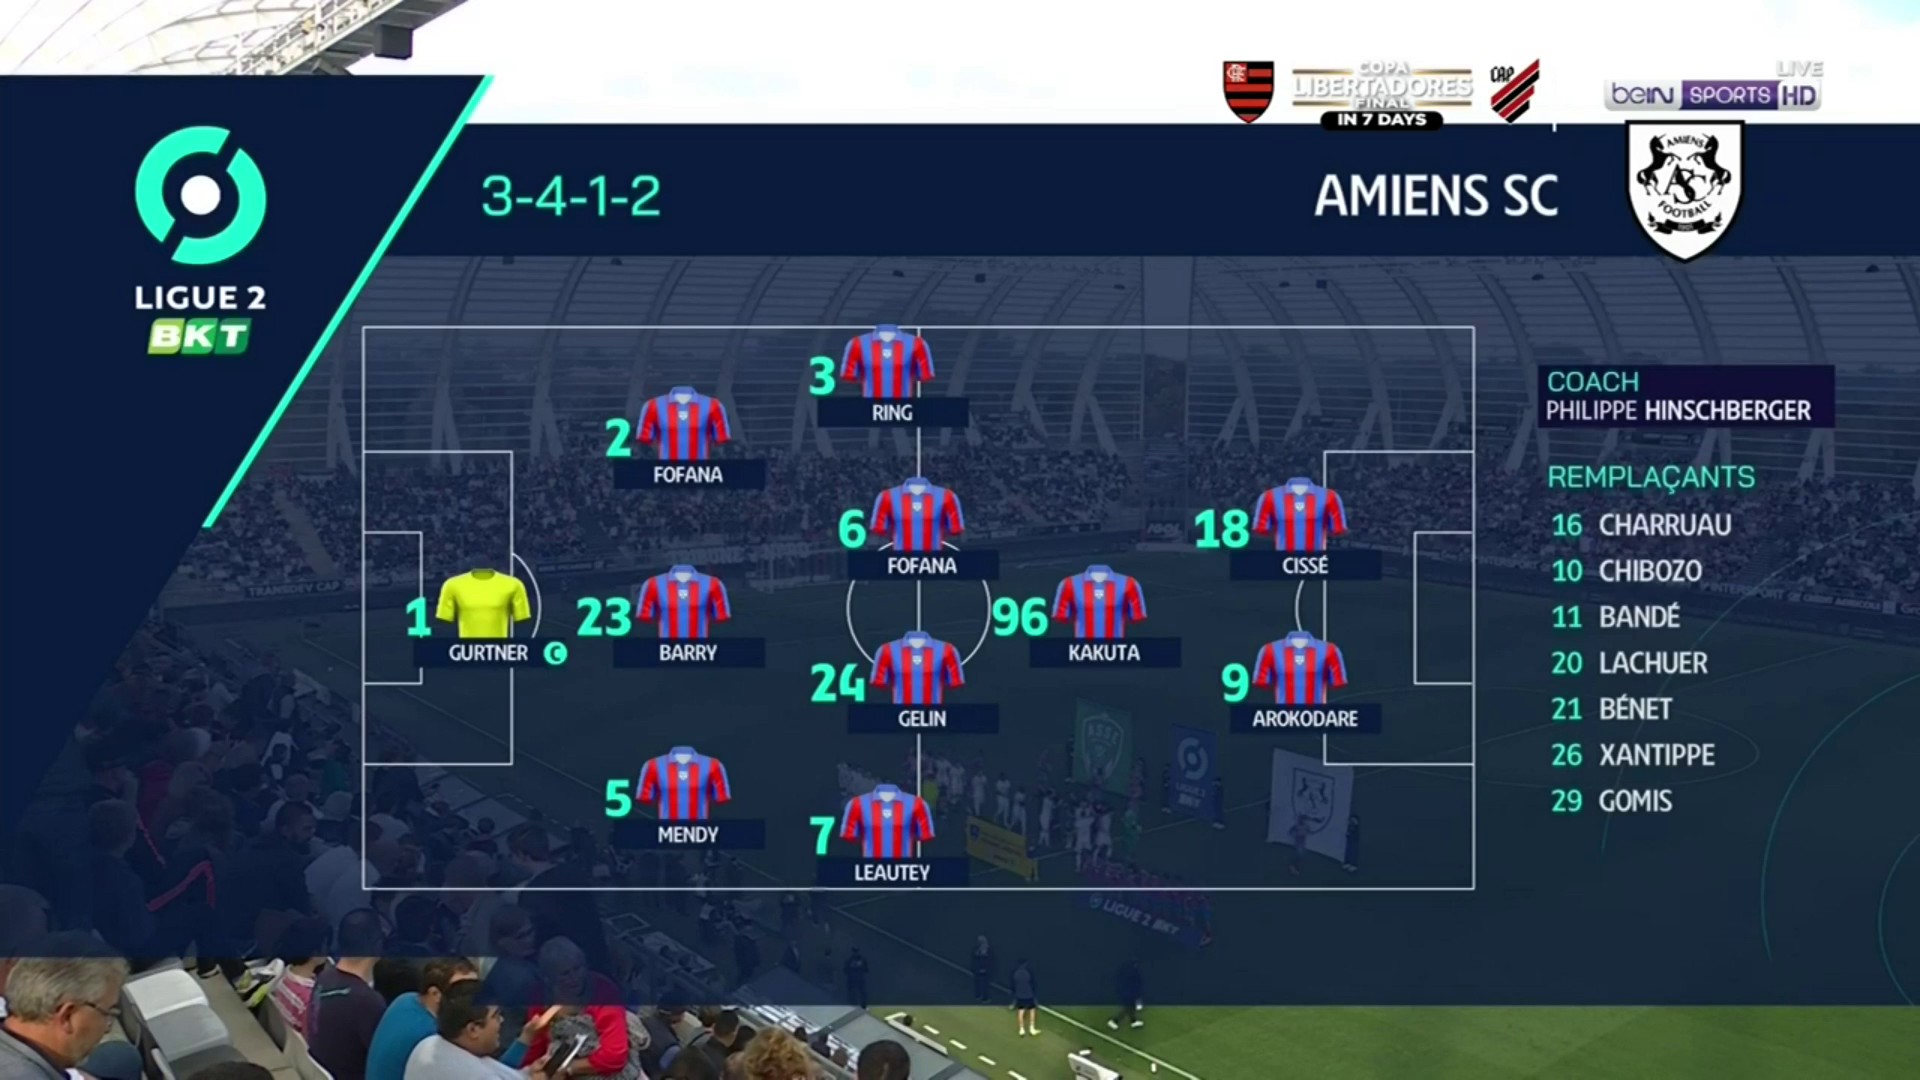 HL Ligue 2 - Amiens - Saint Etienne